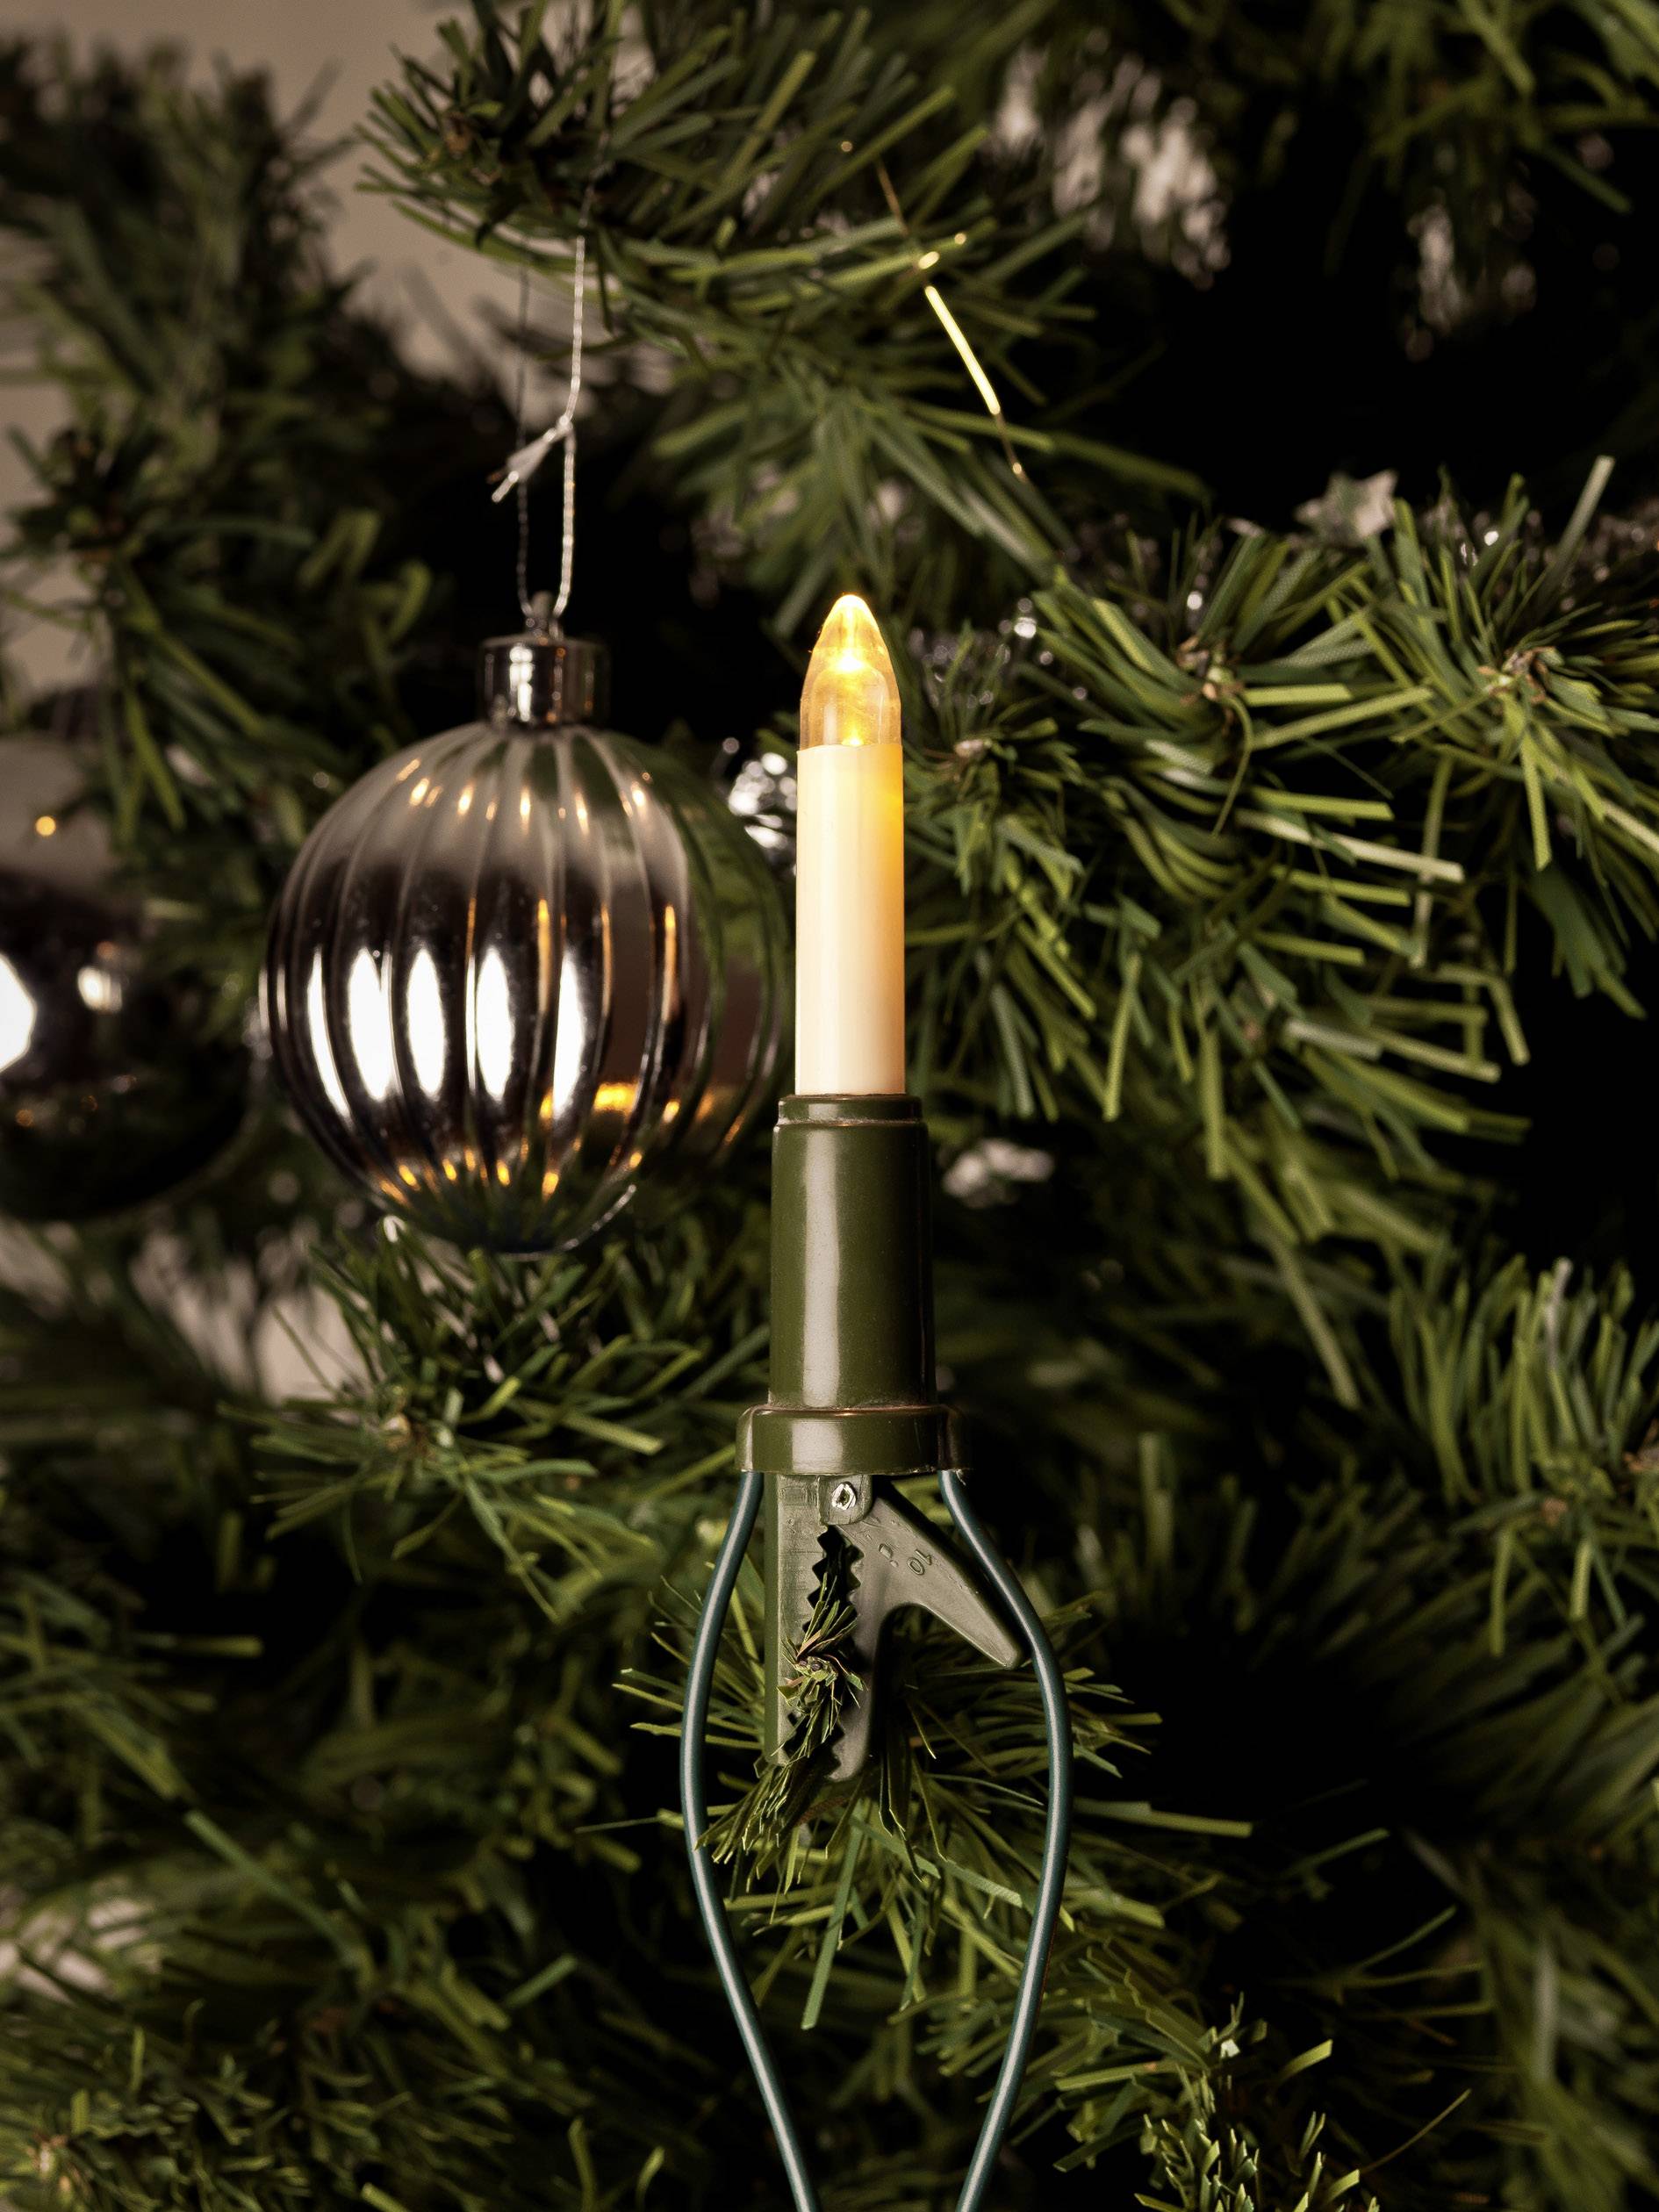 KONSTSMIDE 1068-020 Weihnachtsbaum-Beleuchtung Innen netzbetrieben 10 LED Warm-Weiß Beleuchtete